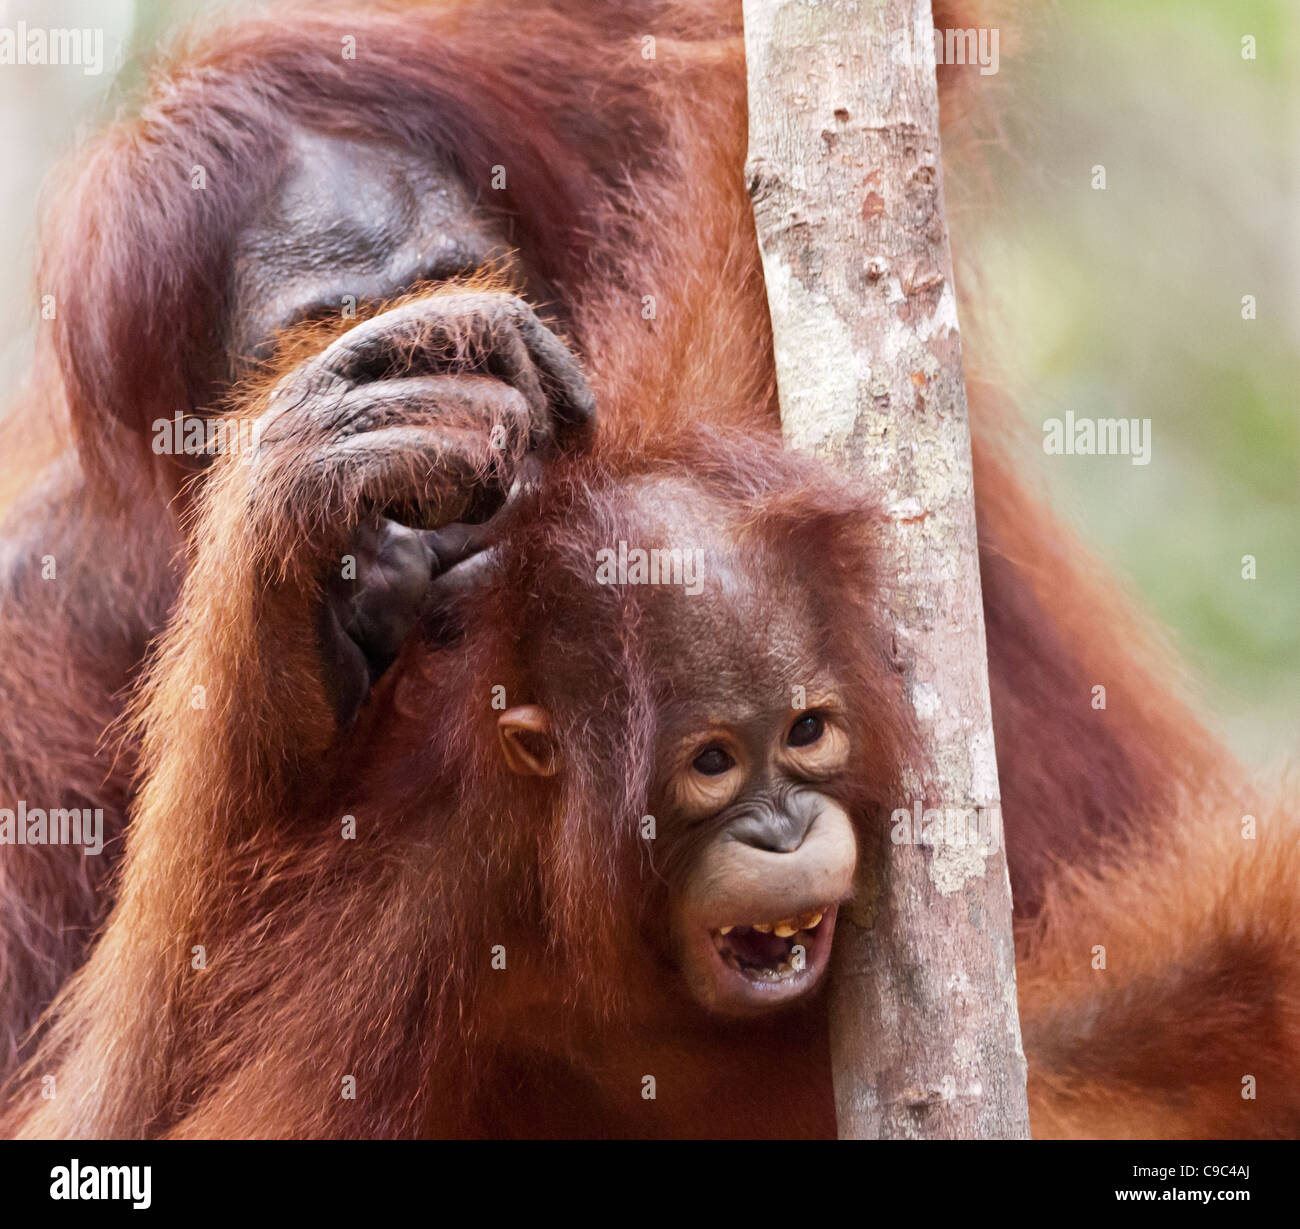 Ein Erwachsener weiblicher Orang-Utan pflegen ihre jungen Nachkommen. Quadratisches Format. Stockfoto